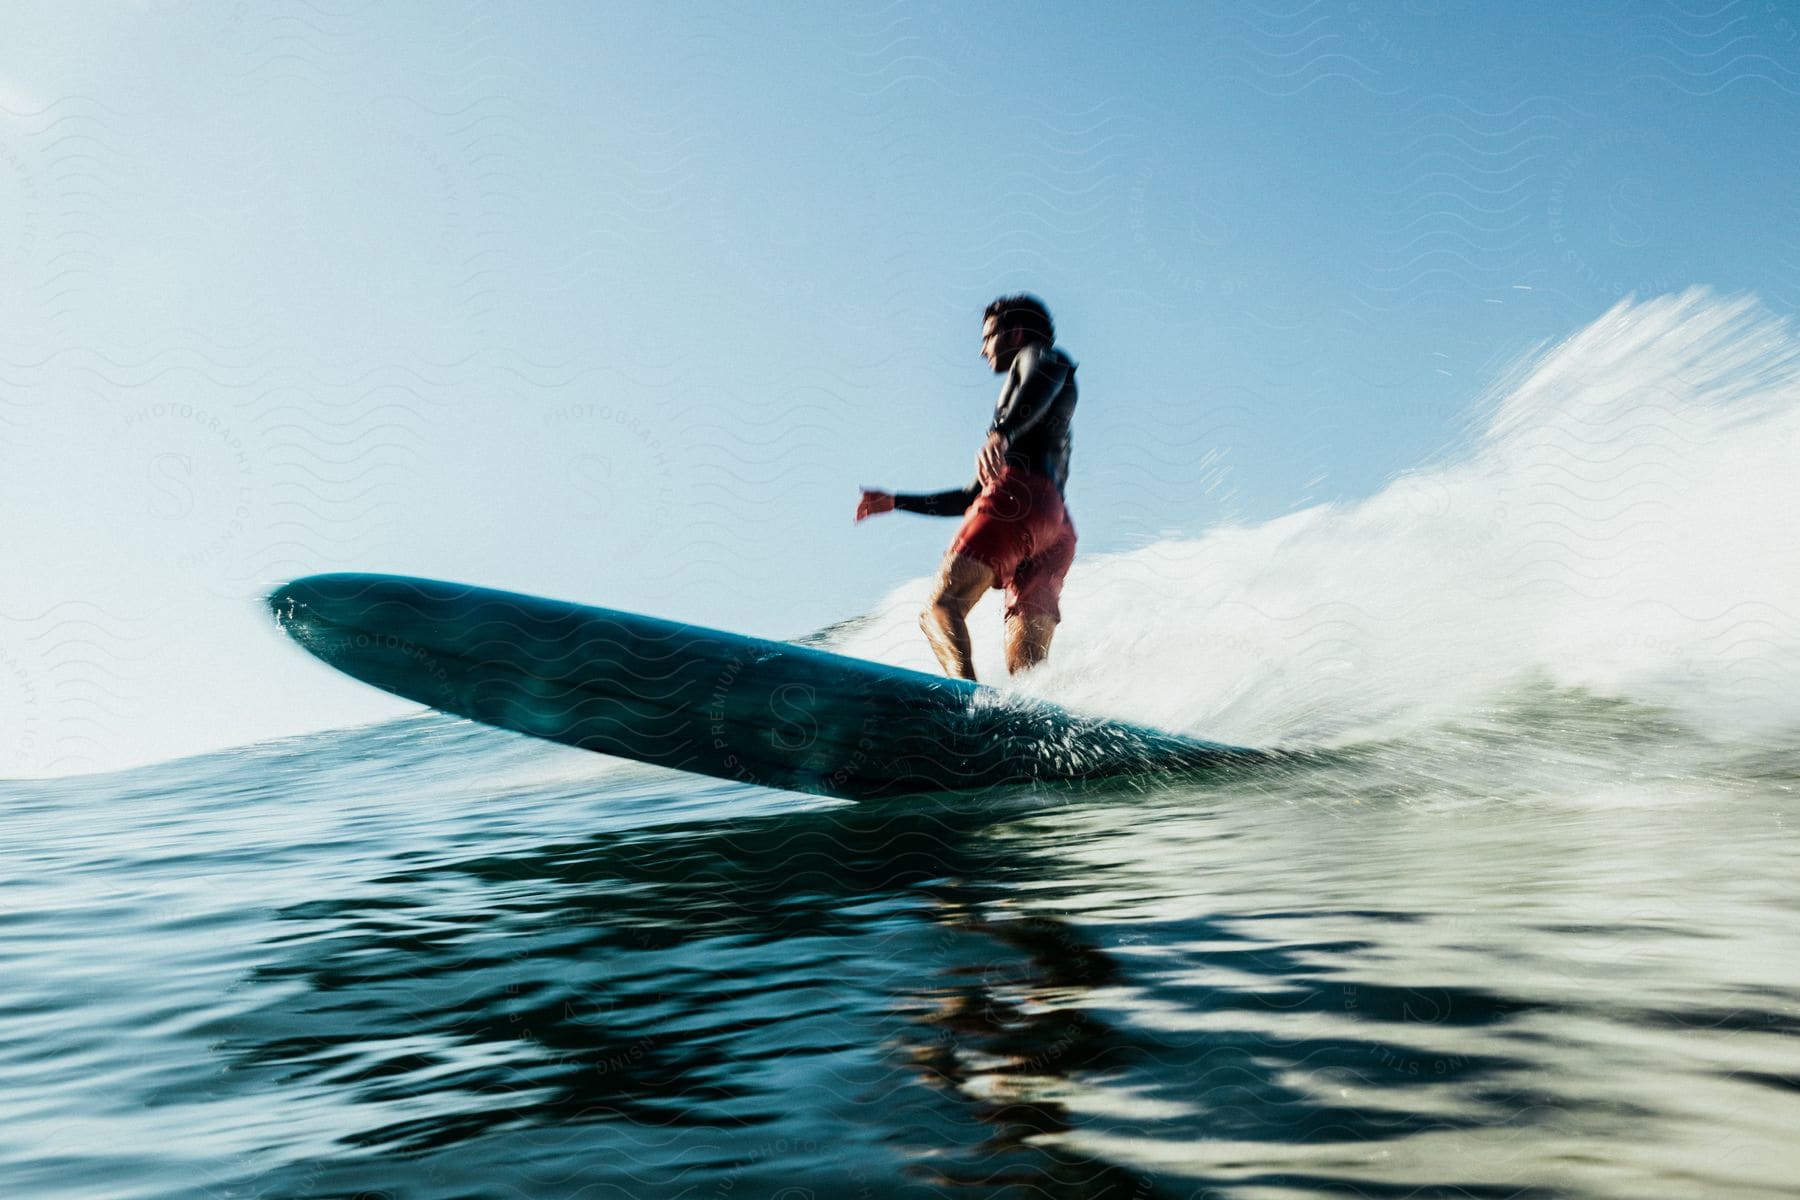 A surfer riding a wave.